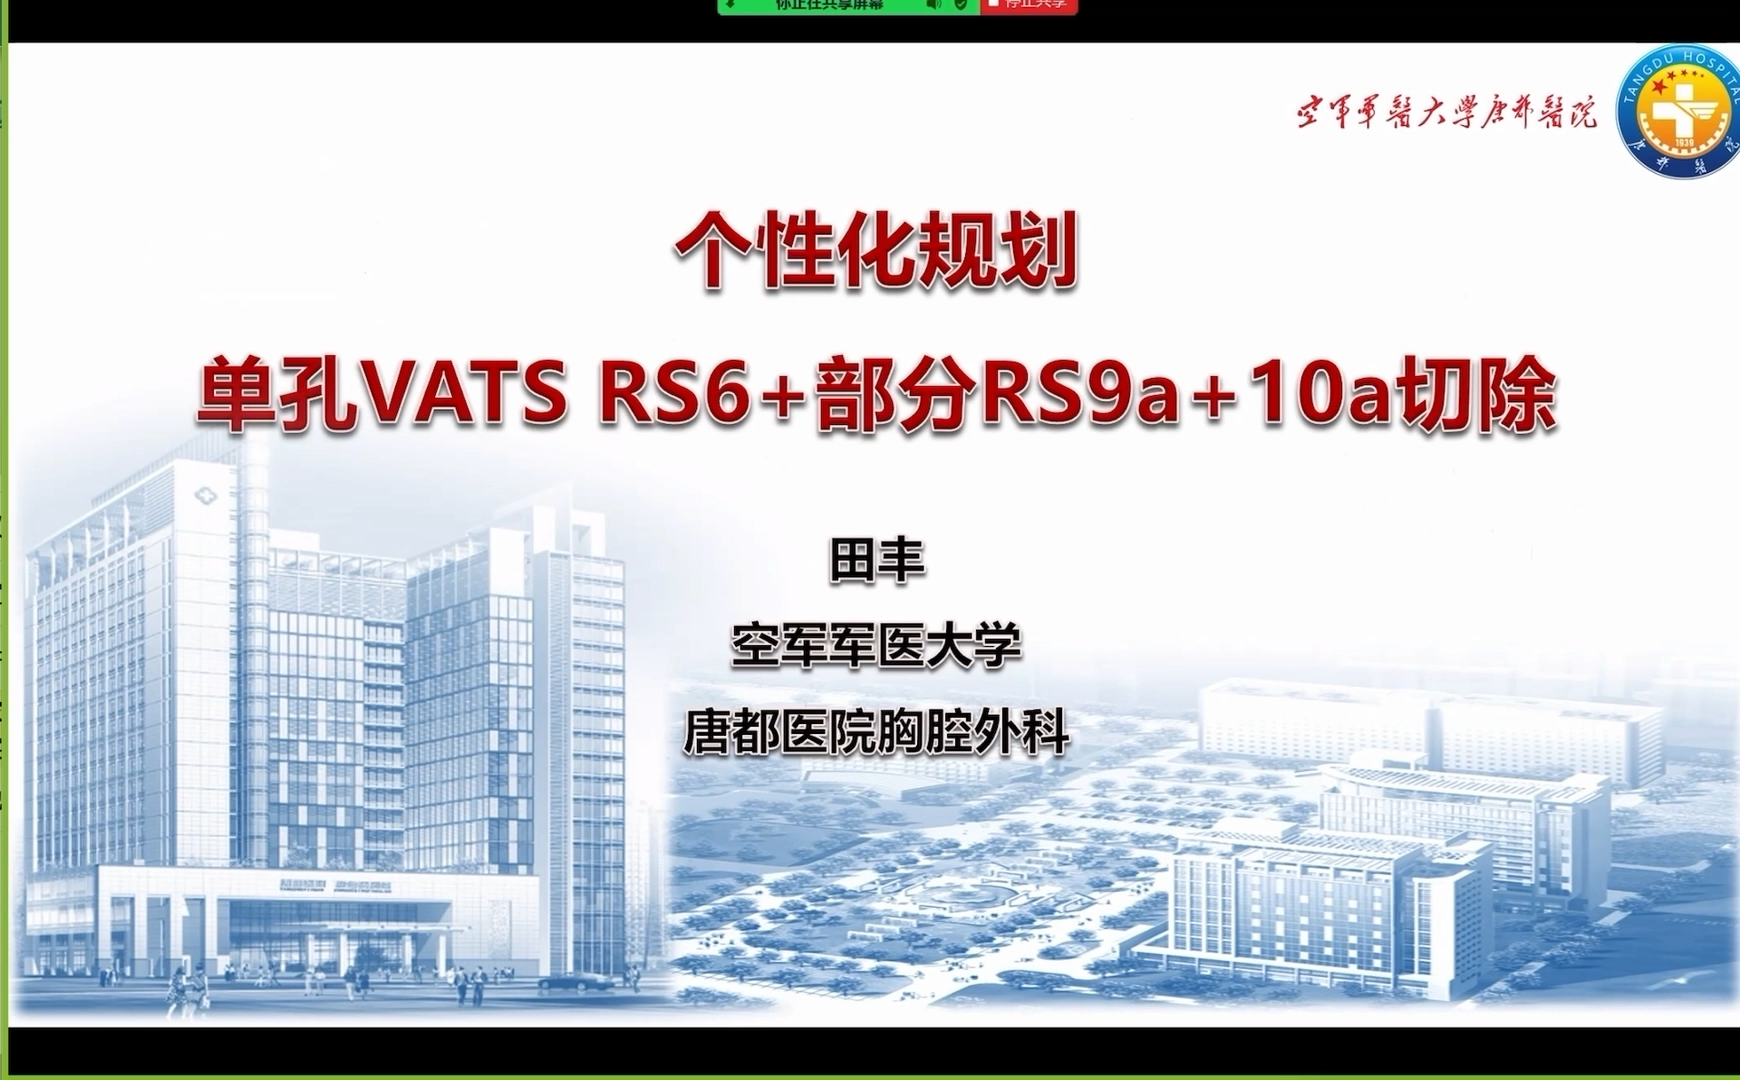 单孔胸腔镜RS6+部分RS9a+10a切除术 田丰-外科技术网